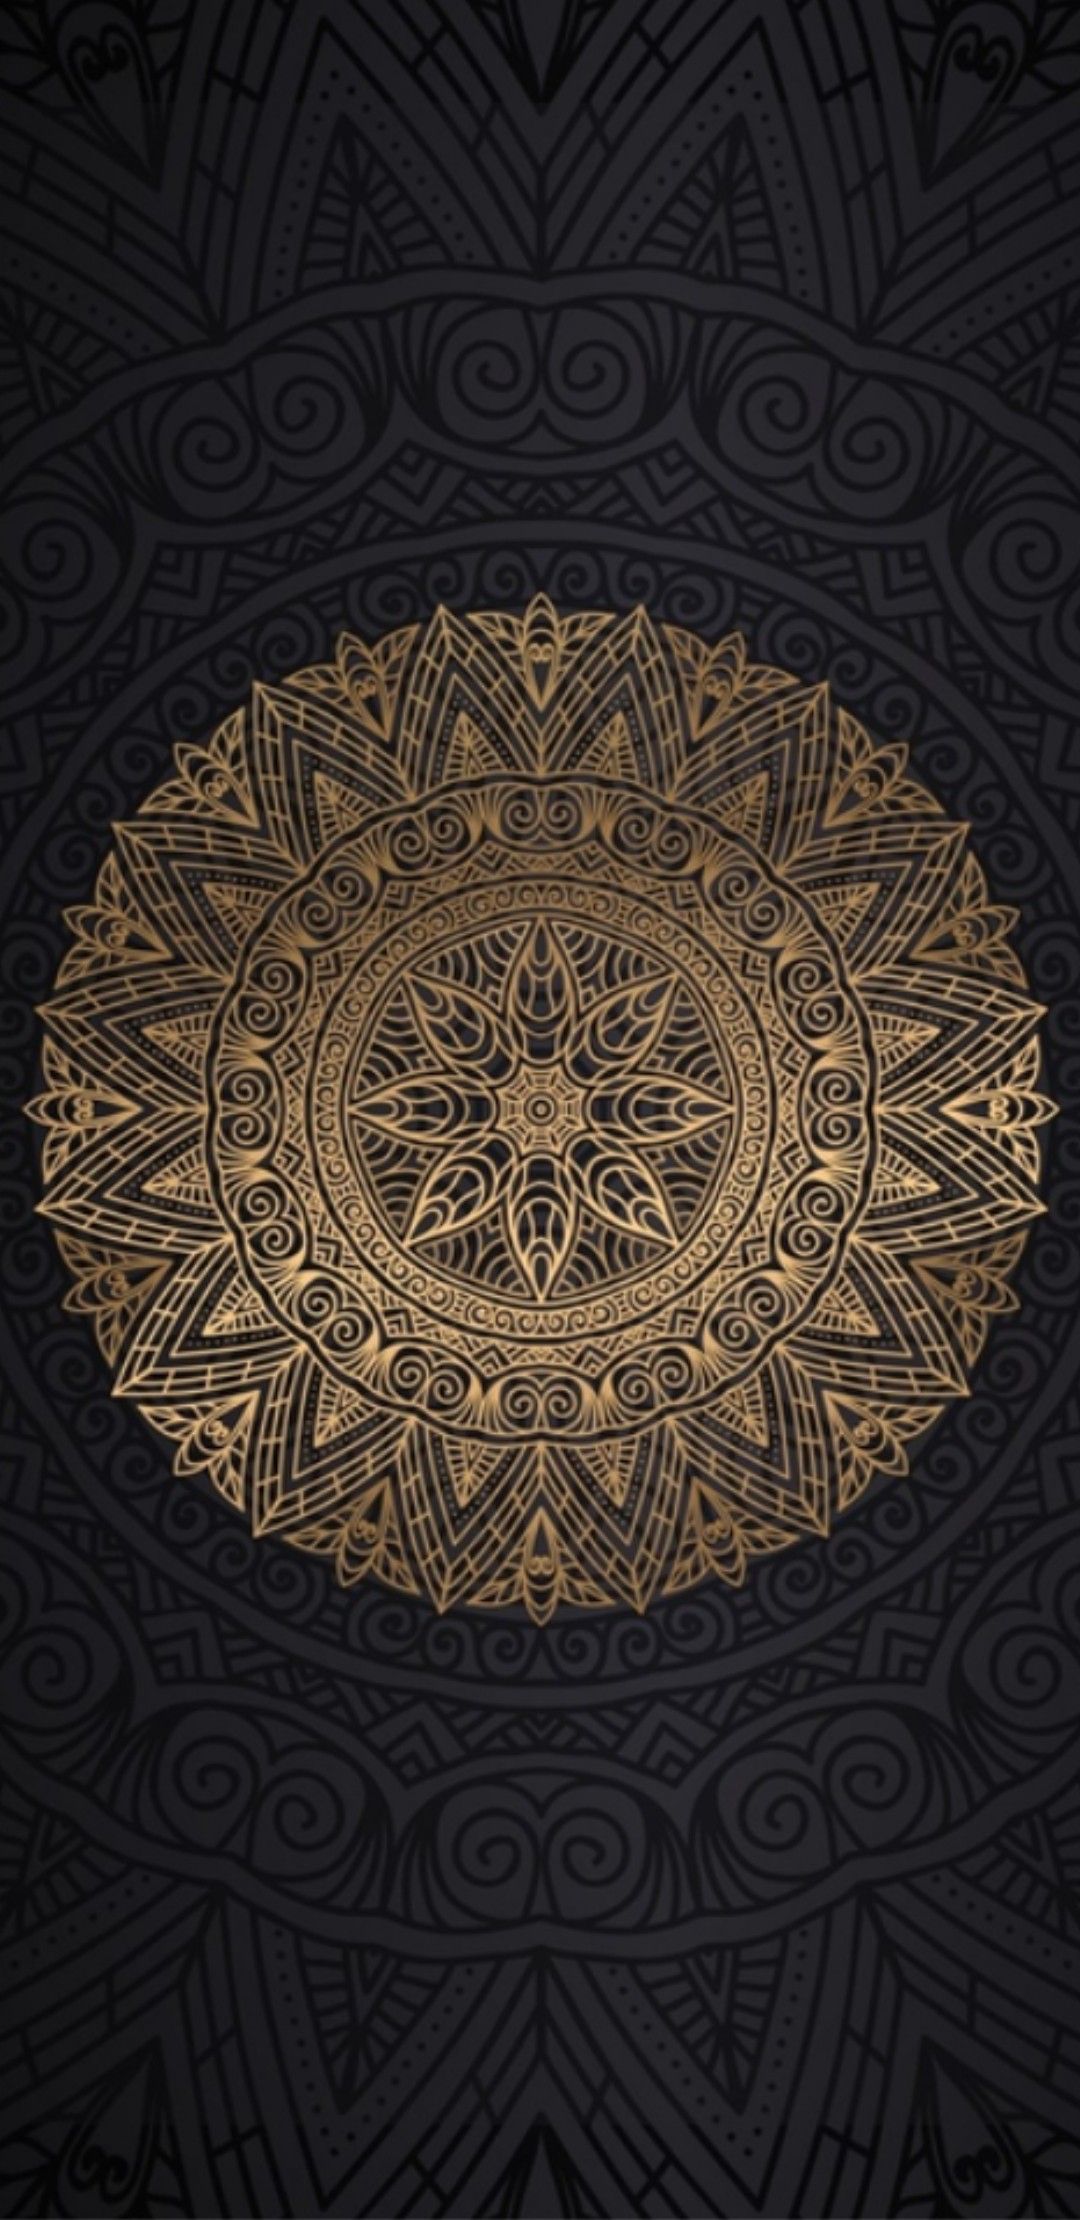 Mandala. Mandala wallpaper, Mandala background wallpaper, Art wallpaper iphone